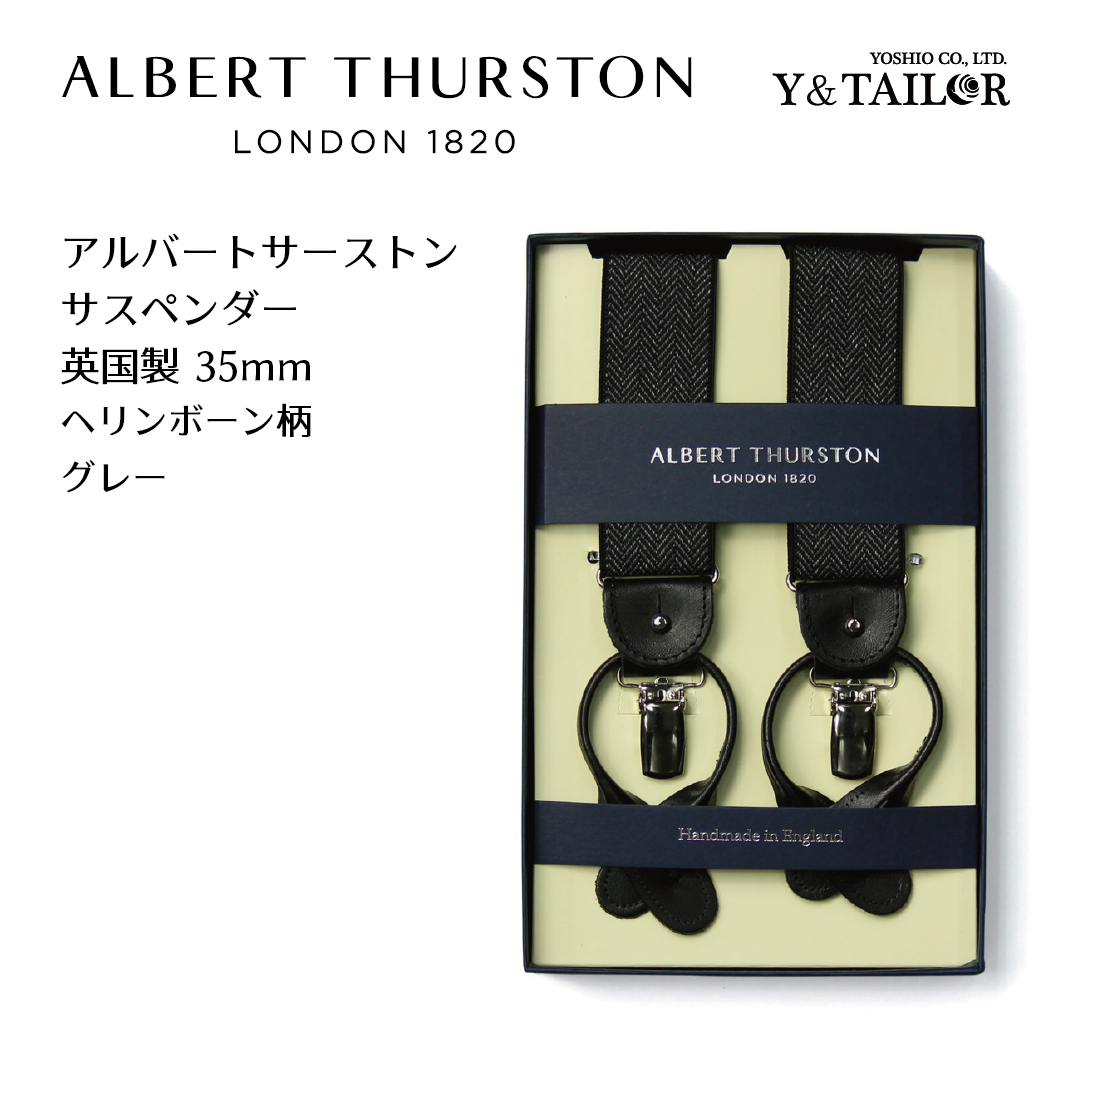 送料無料 英国製 ALBERT THURSTON サスペンダー 実物 England アルバートサーストン エラスティック ブランド 正規逆輸入品 グレー メンズ ヘリンボーン柄